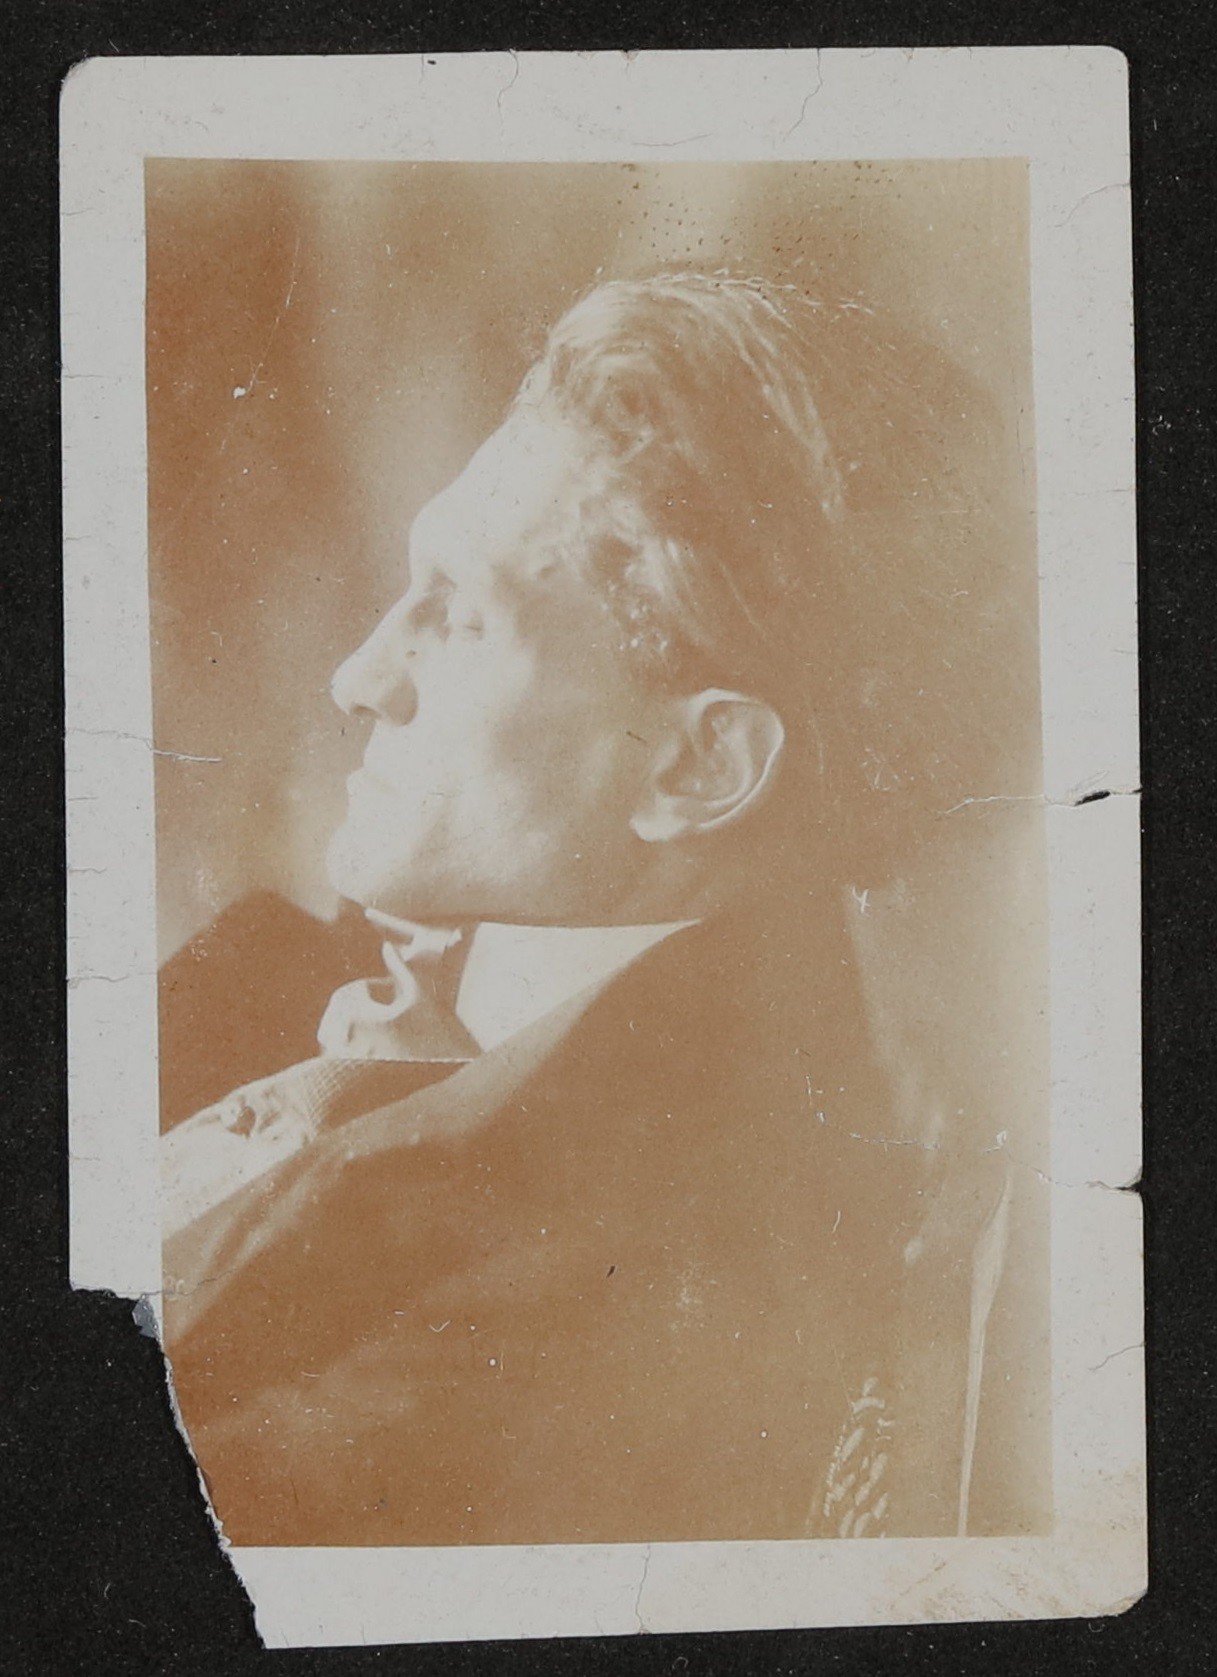 Stefan George im Profil mit geschlossenen Augen (Freies Deutsches Hochstift / Frankfurter Goethe-Museum CC BY-NC-SA)